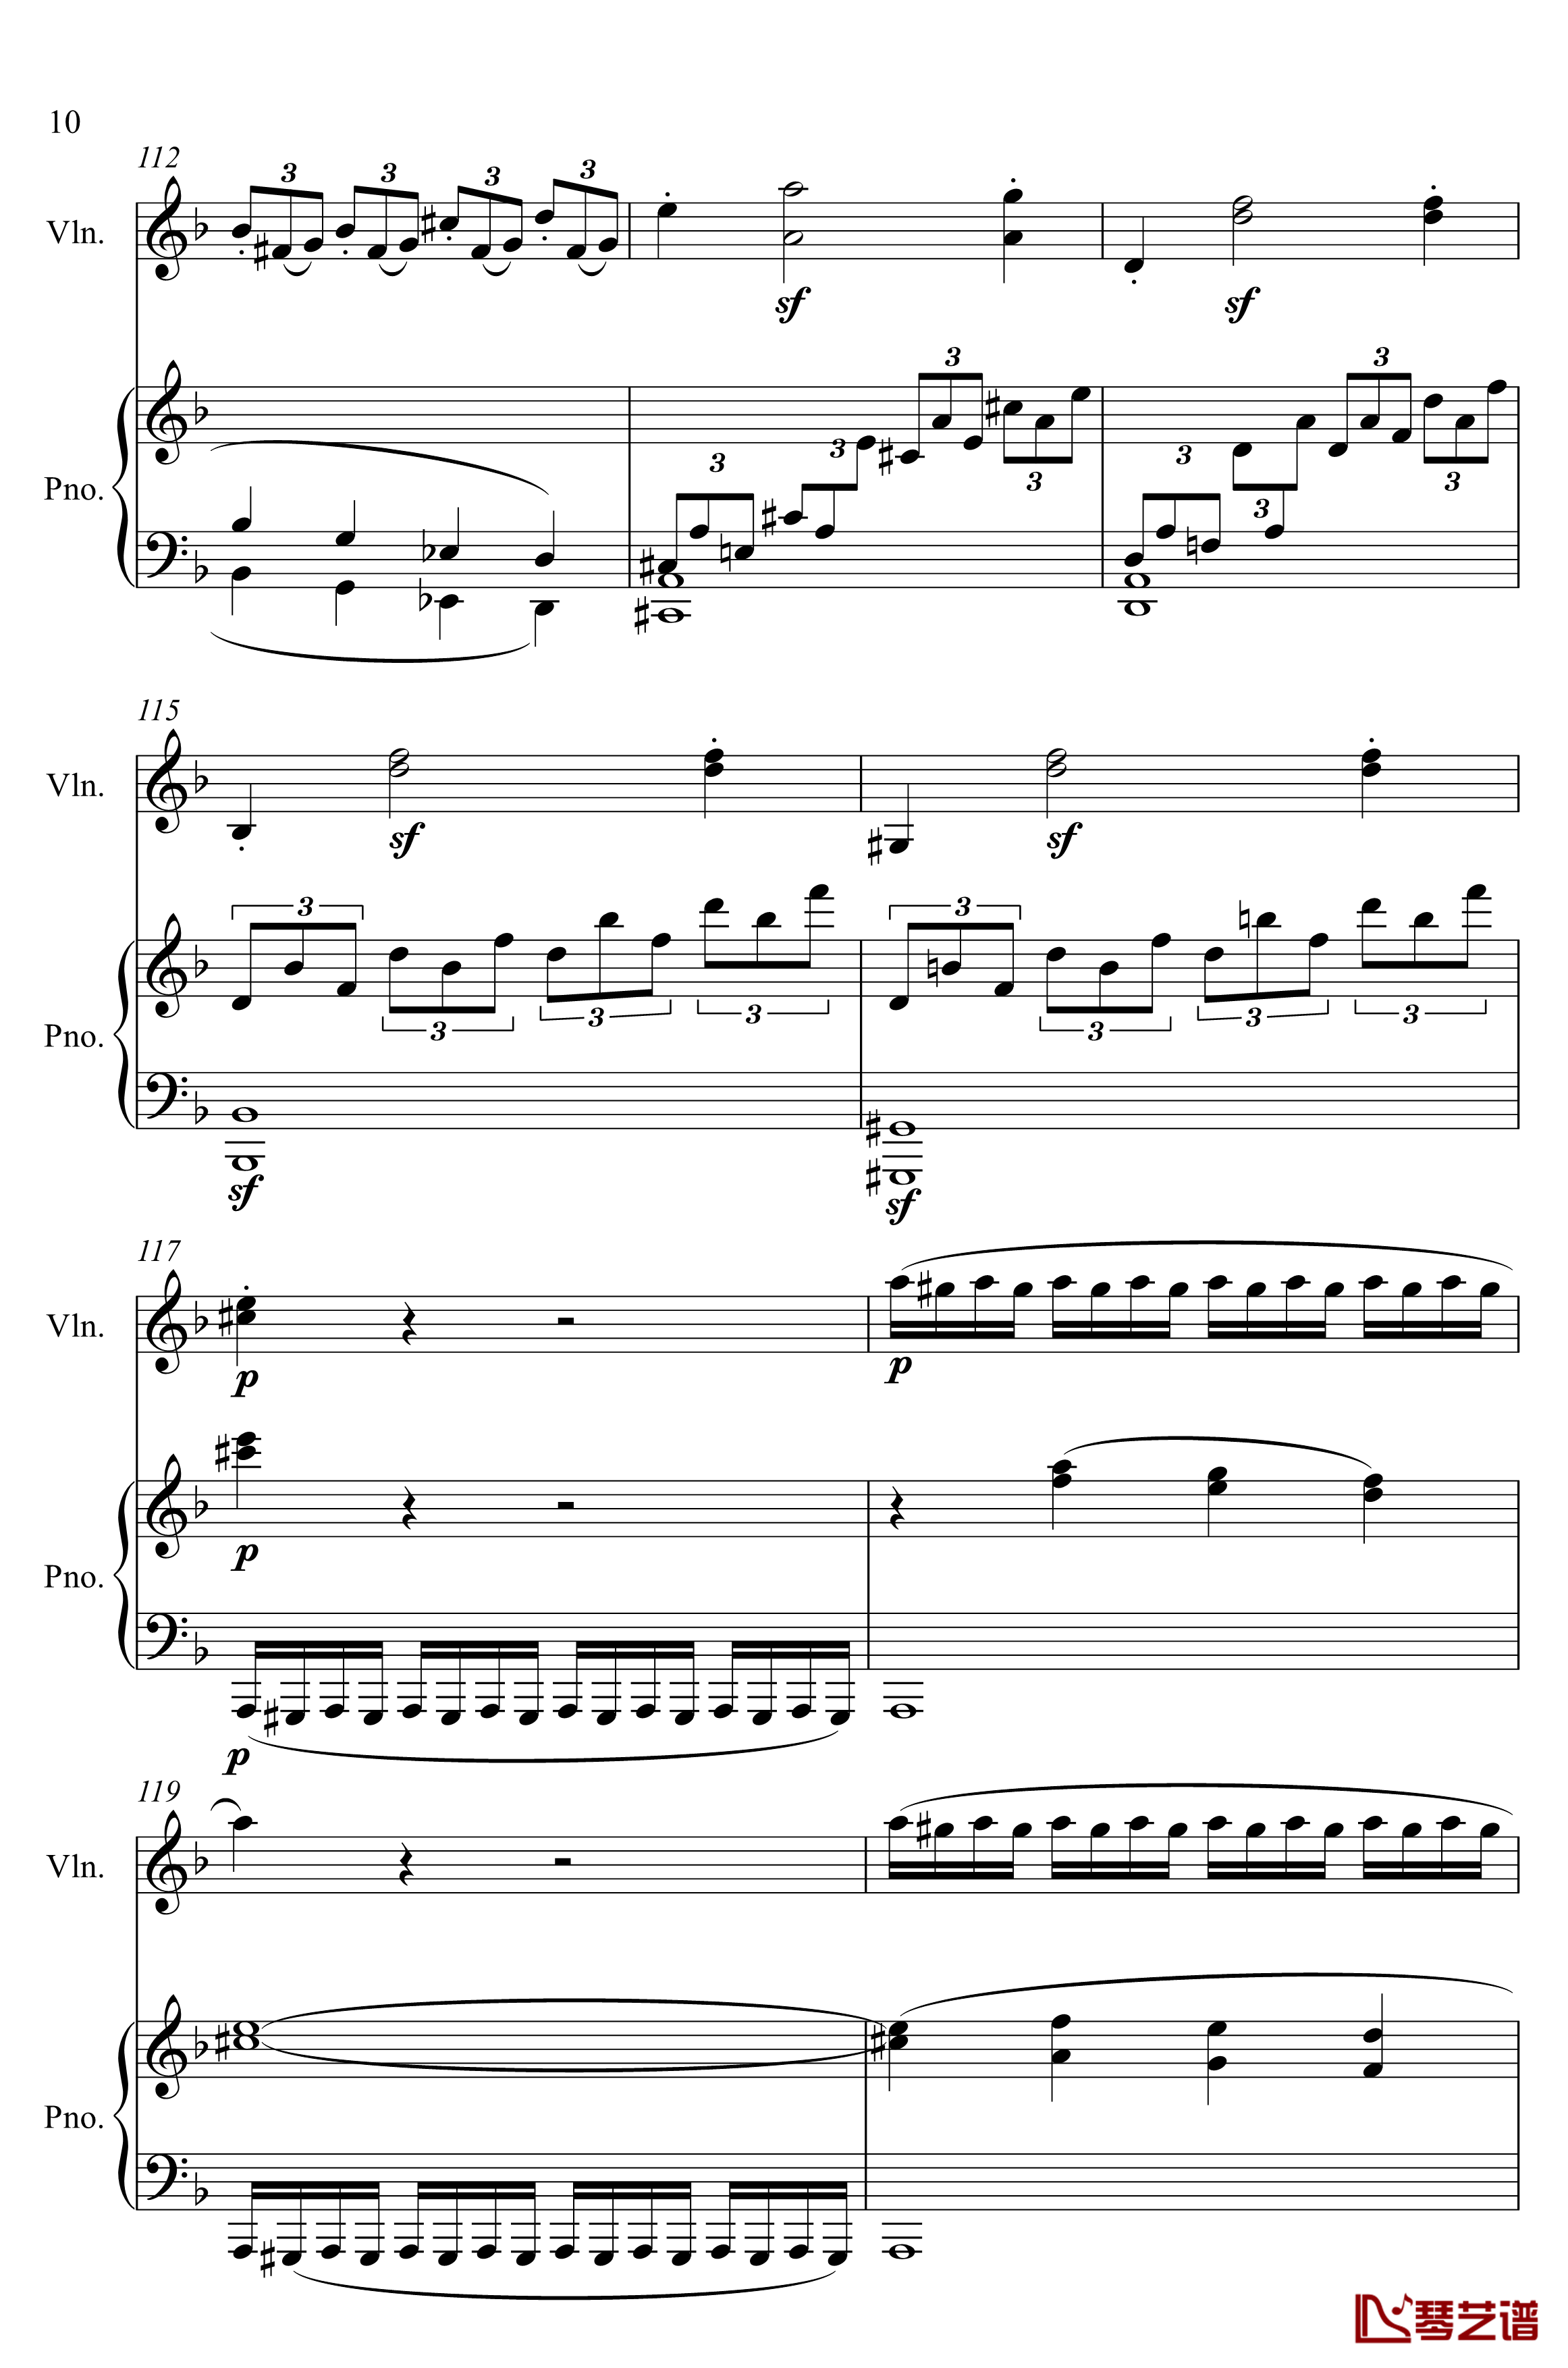 第5小提琴与钢琴奏鸣曲钢琴谱-第一乐章钢琴谱-贝多芬-beethoven10